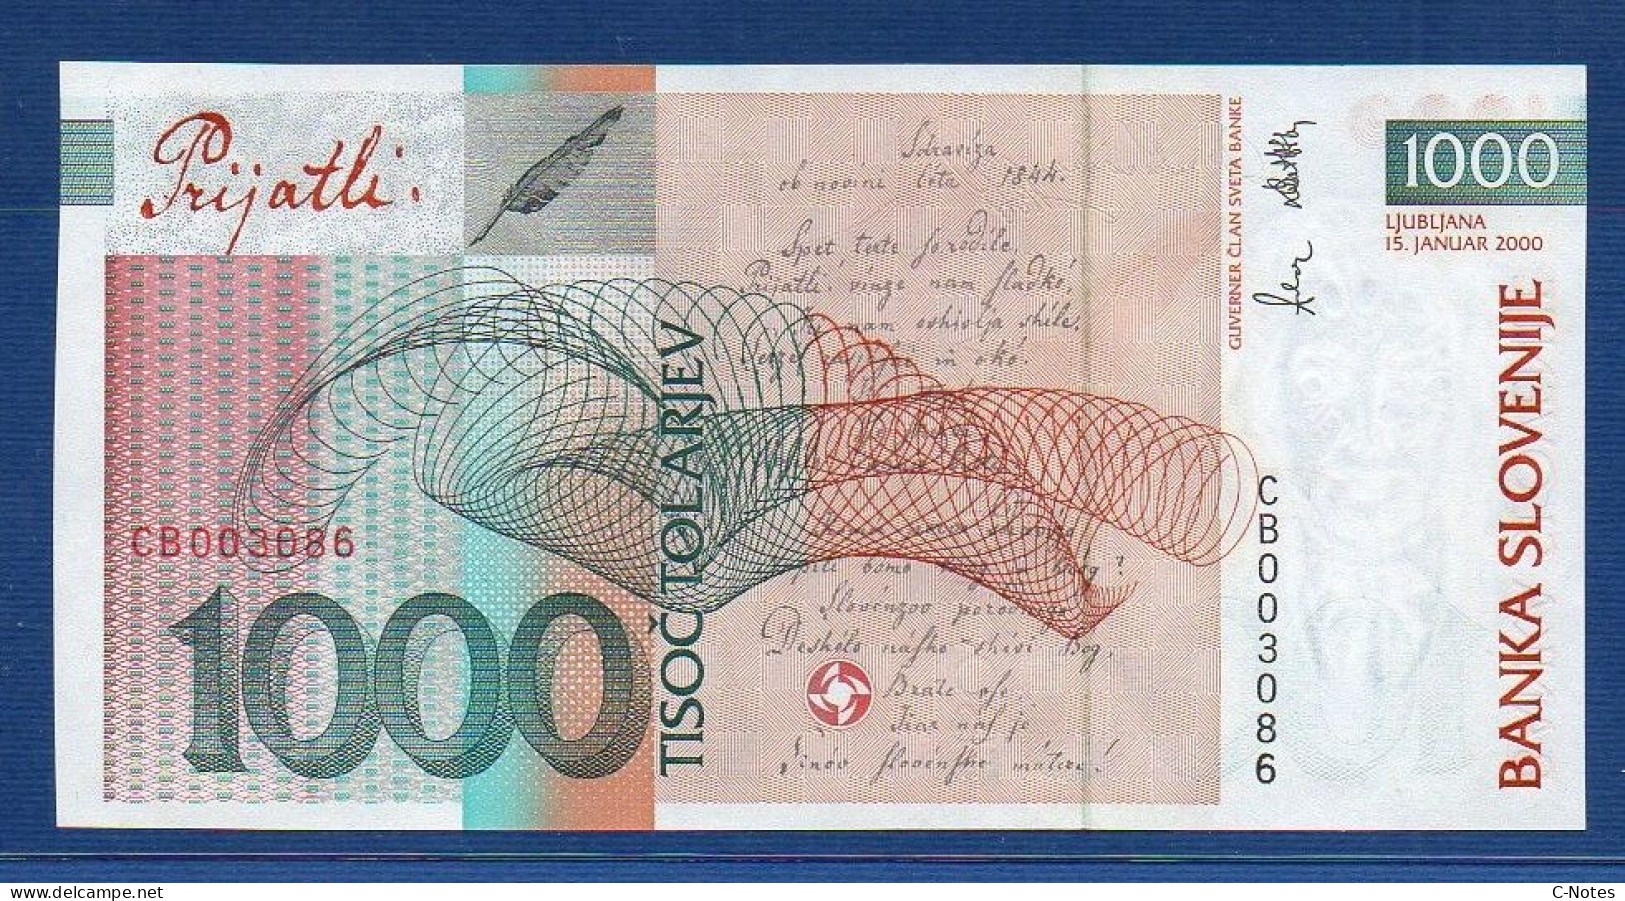 SLOVENIA - P.26 – 1000 Tolarjev 2001 UNC, S/n CB003086 "10th Anniversary Of Banka Slovenije" Commemorative Issue - Slovenia